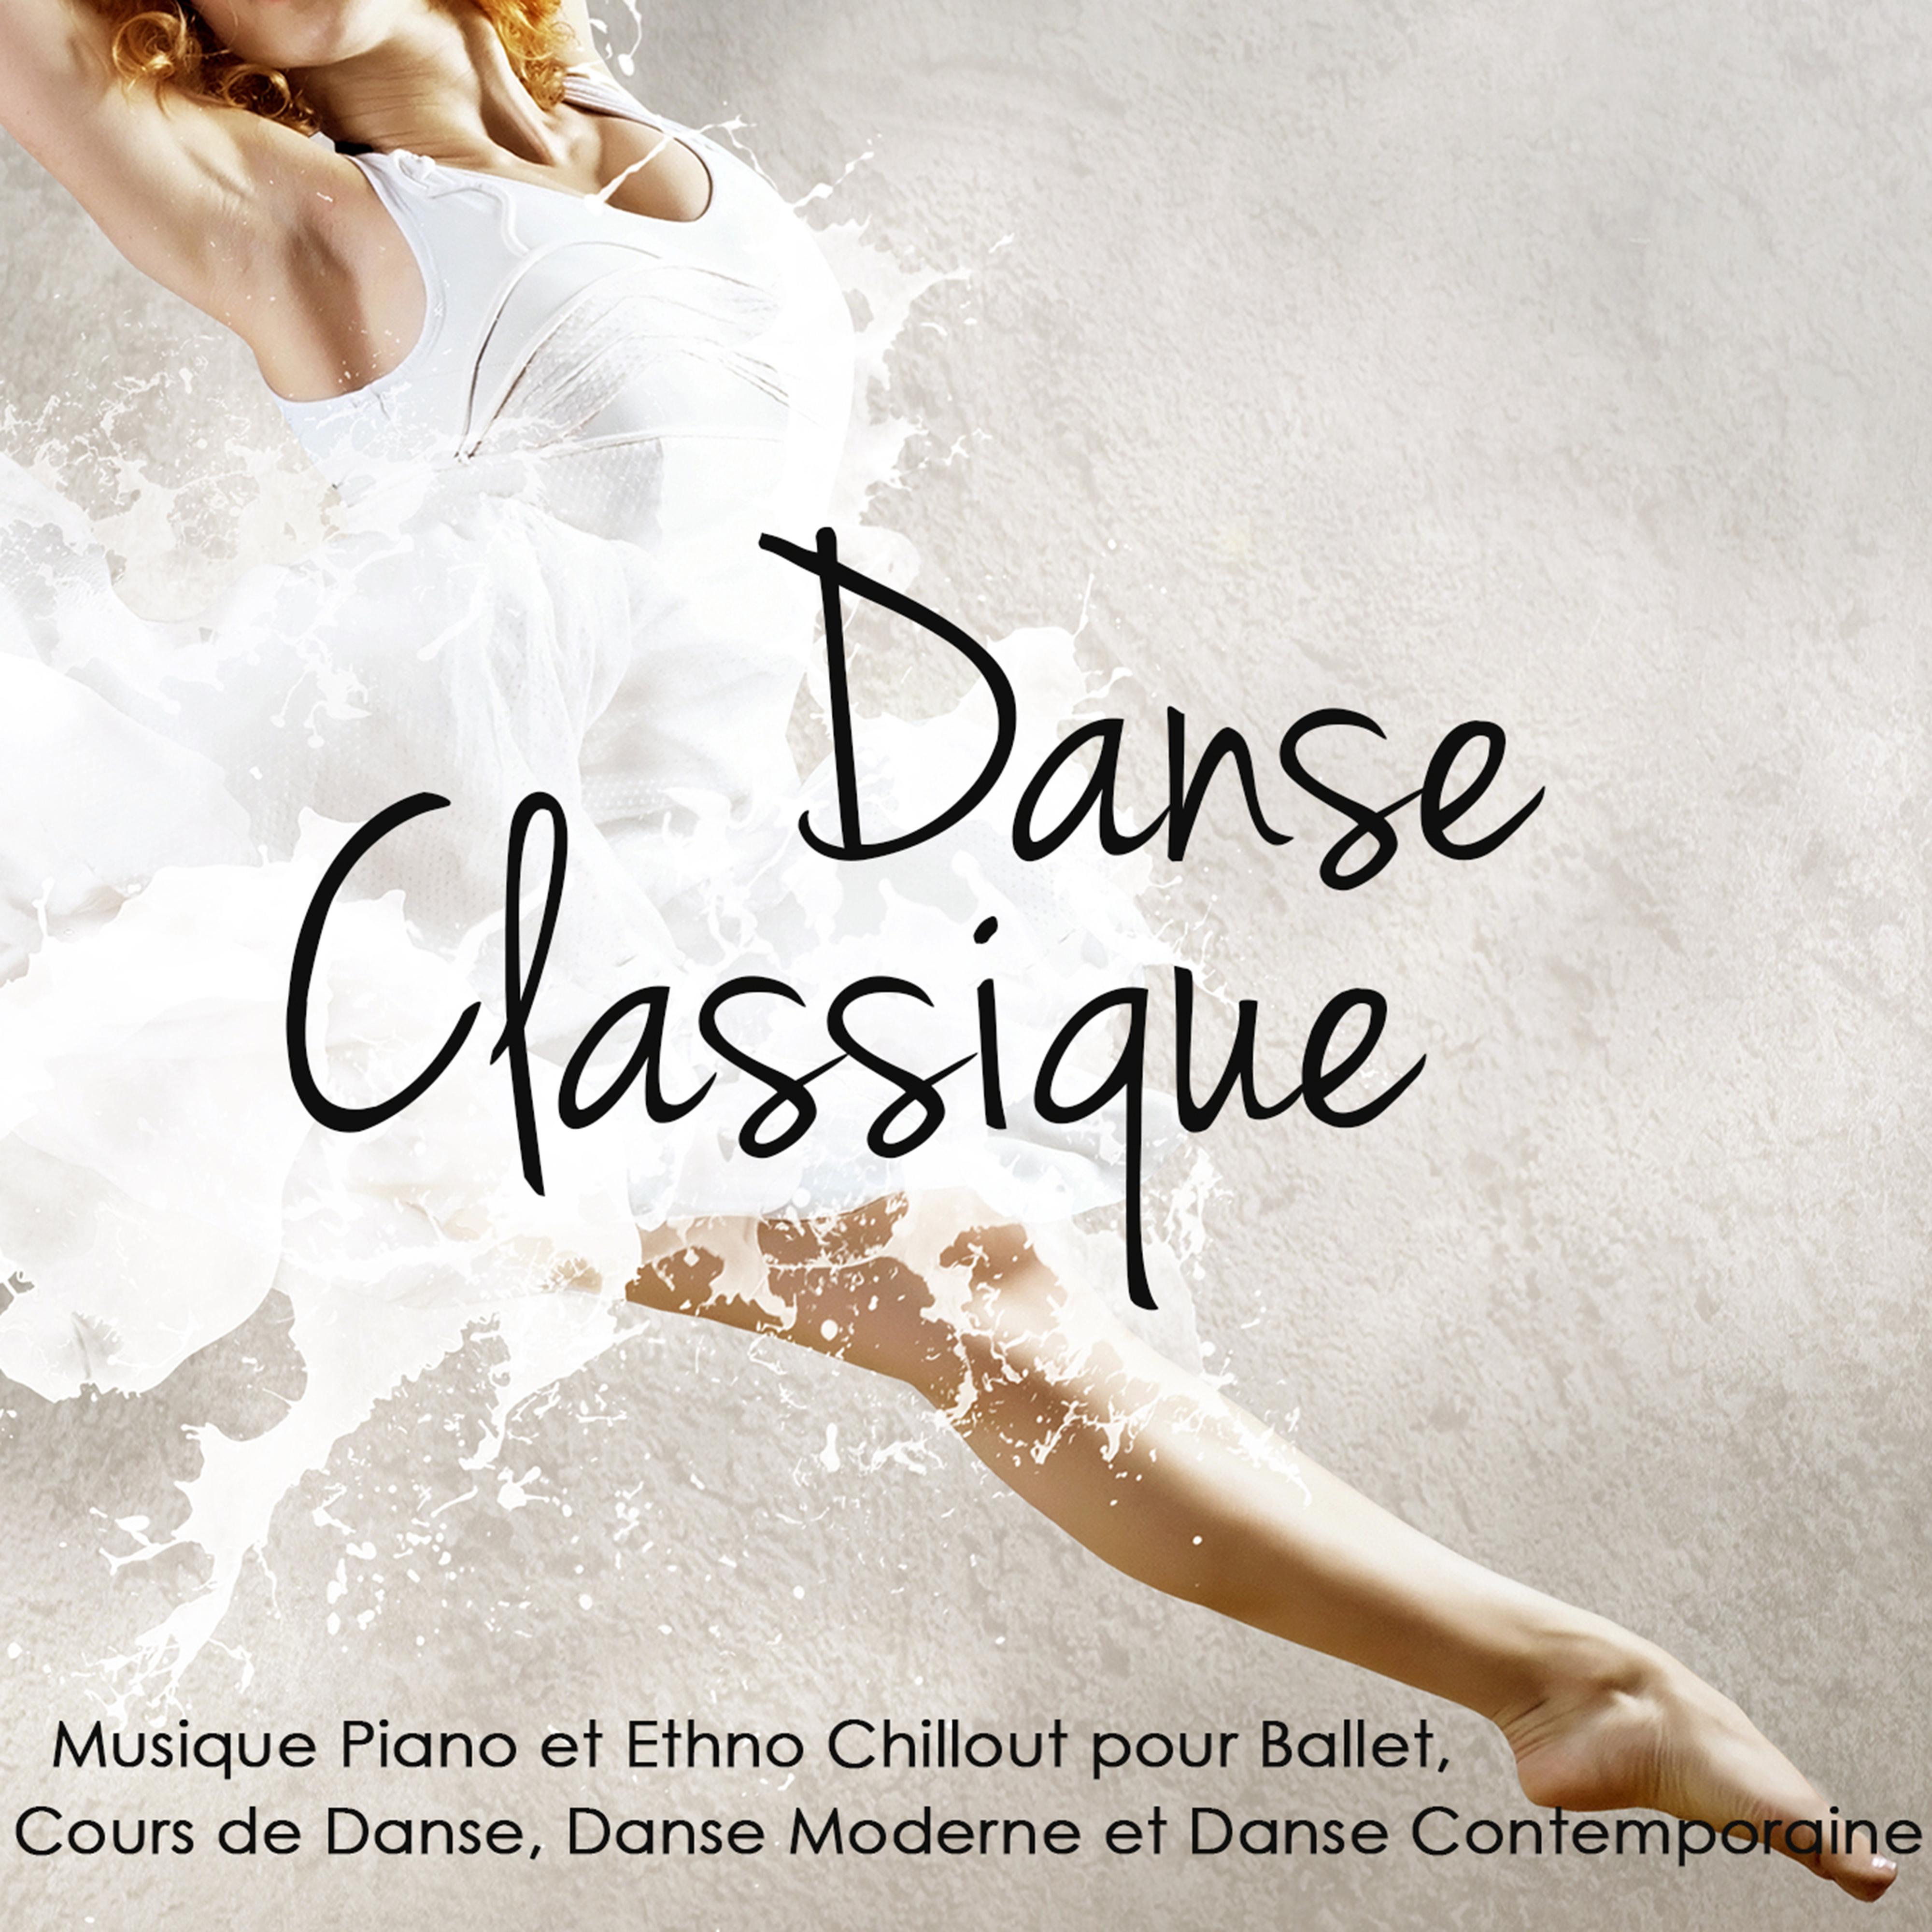 Danse Classique  Musique Piano et Ethno Chillout pour Ballet, Cours de Danse, Danse Moderne et Danse Contemporaine